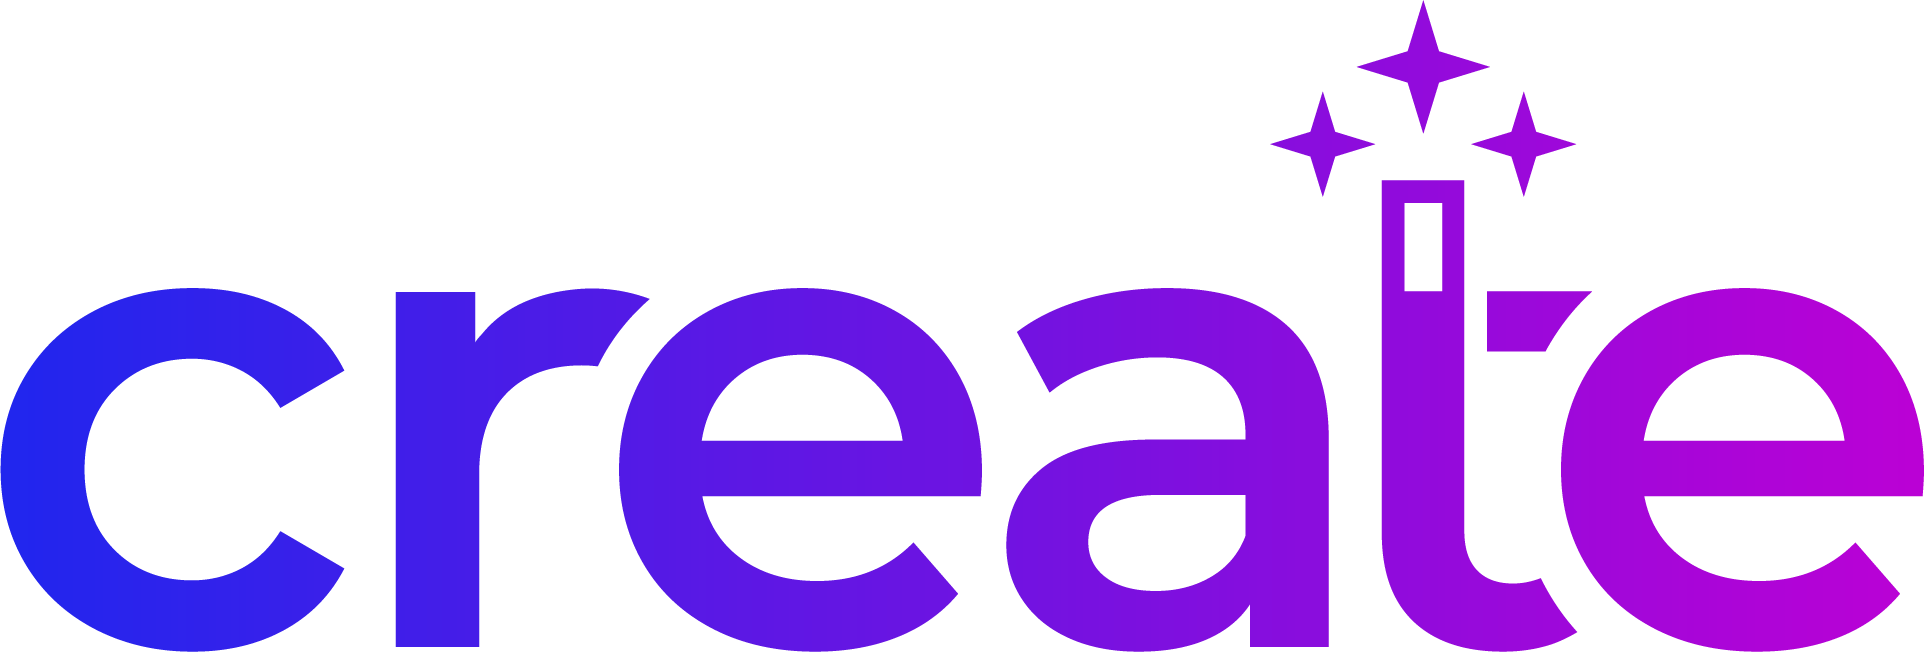 XEN Create